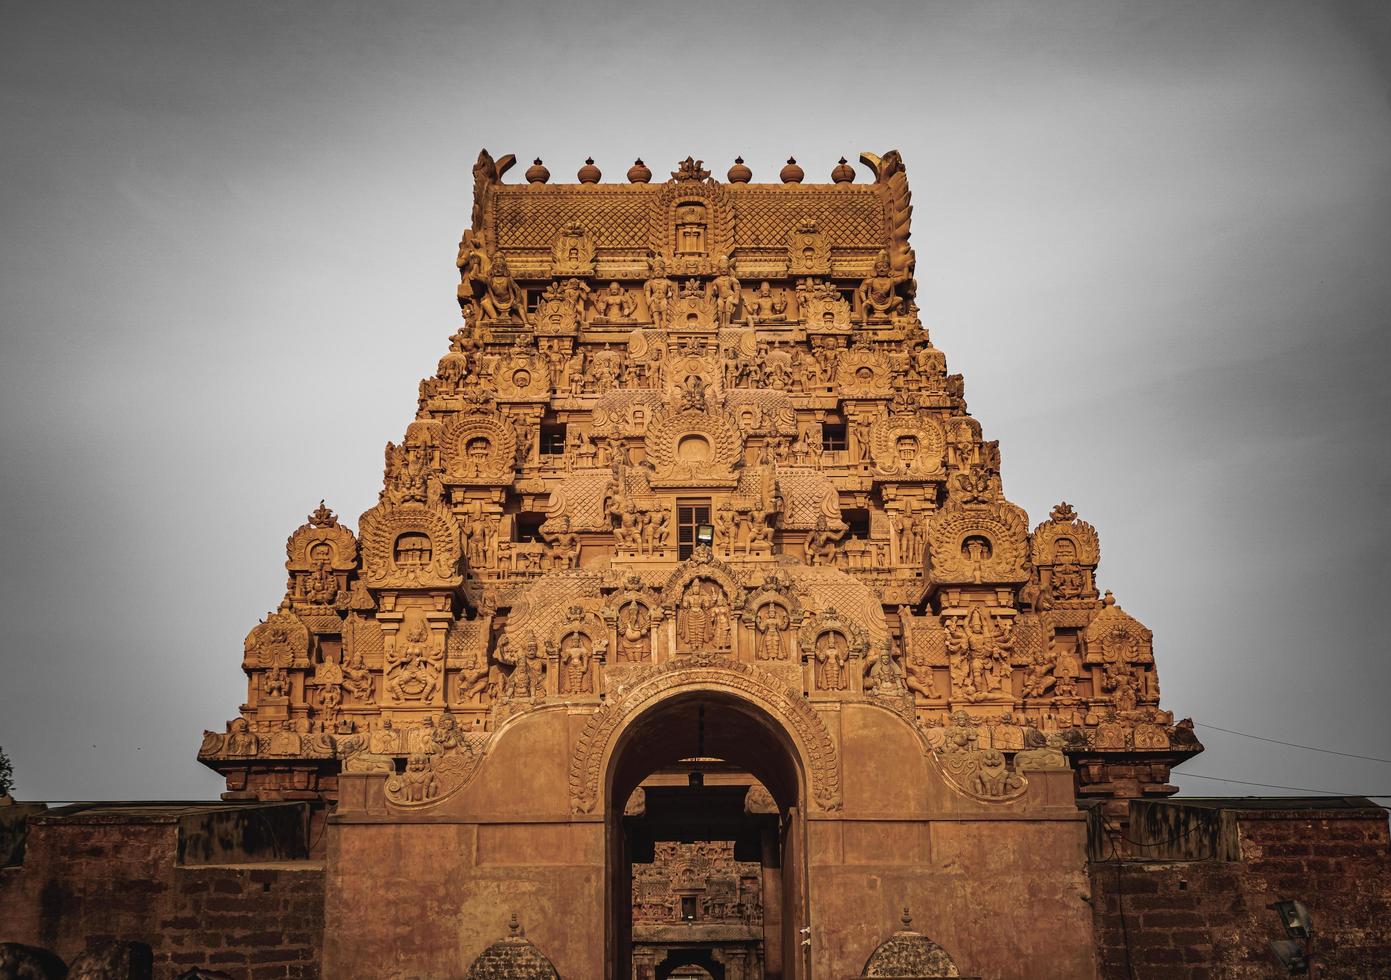 le grand temple de tanjore ou temple brihadeshwara a été construit par le roi raja raja cholan à thanjavur, tamil nadu. c'est le temple le plus ancien et le plus haut d'inde. ce temple inscrit au patrimoine de l'unesco photo